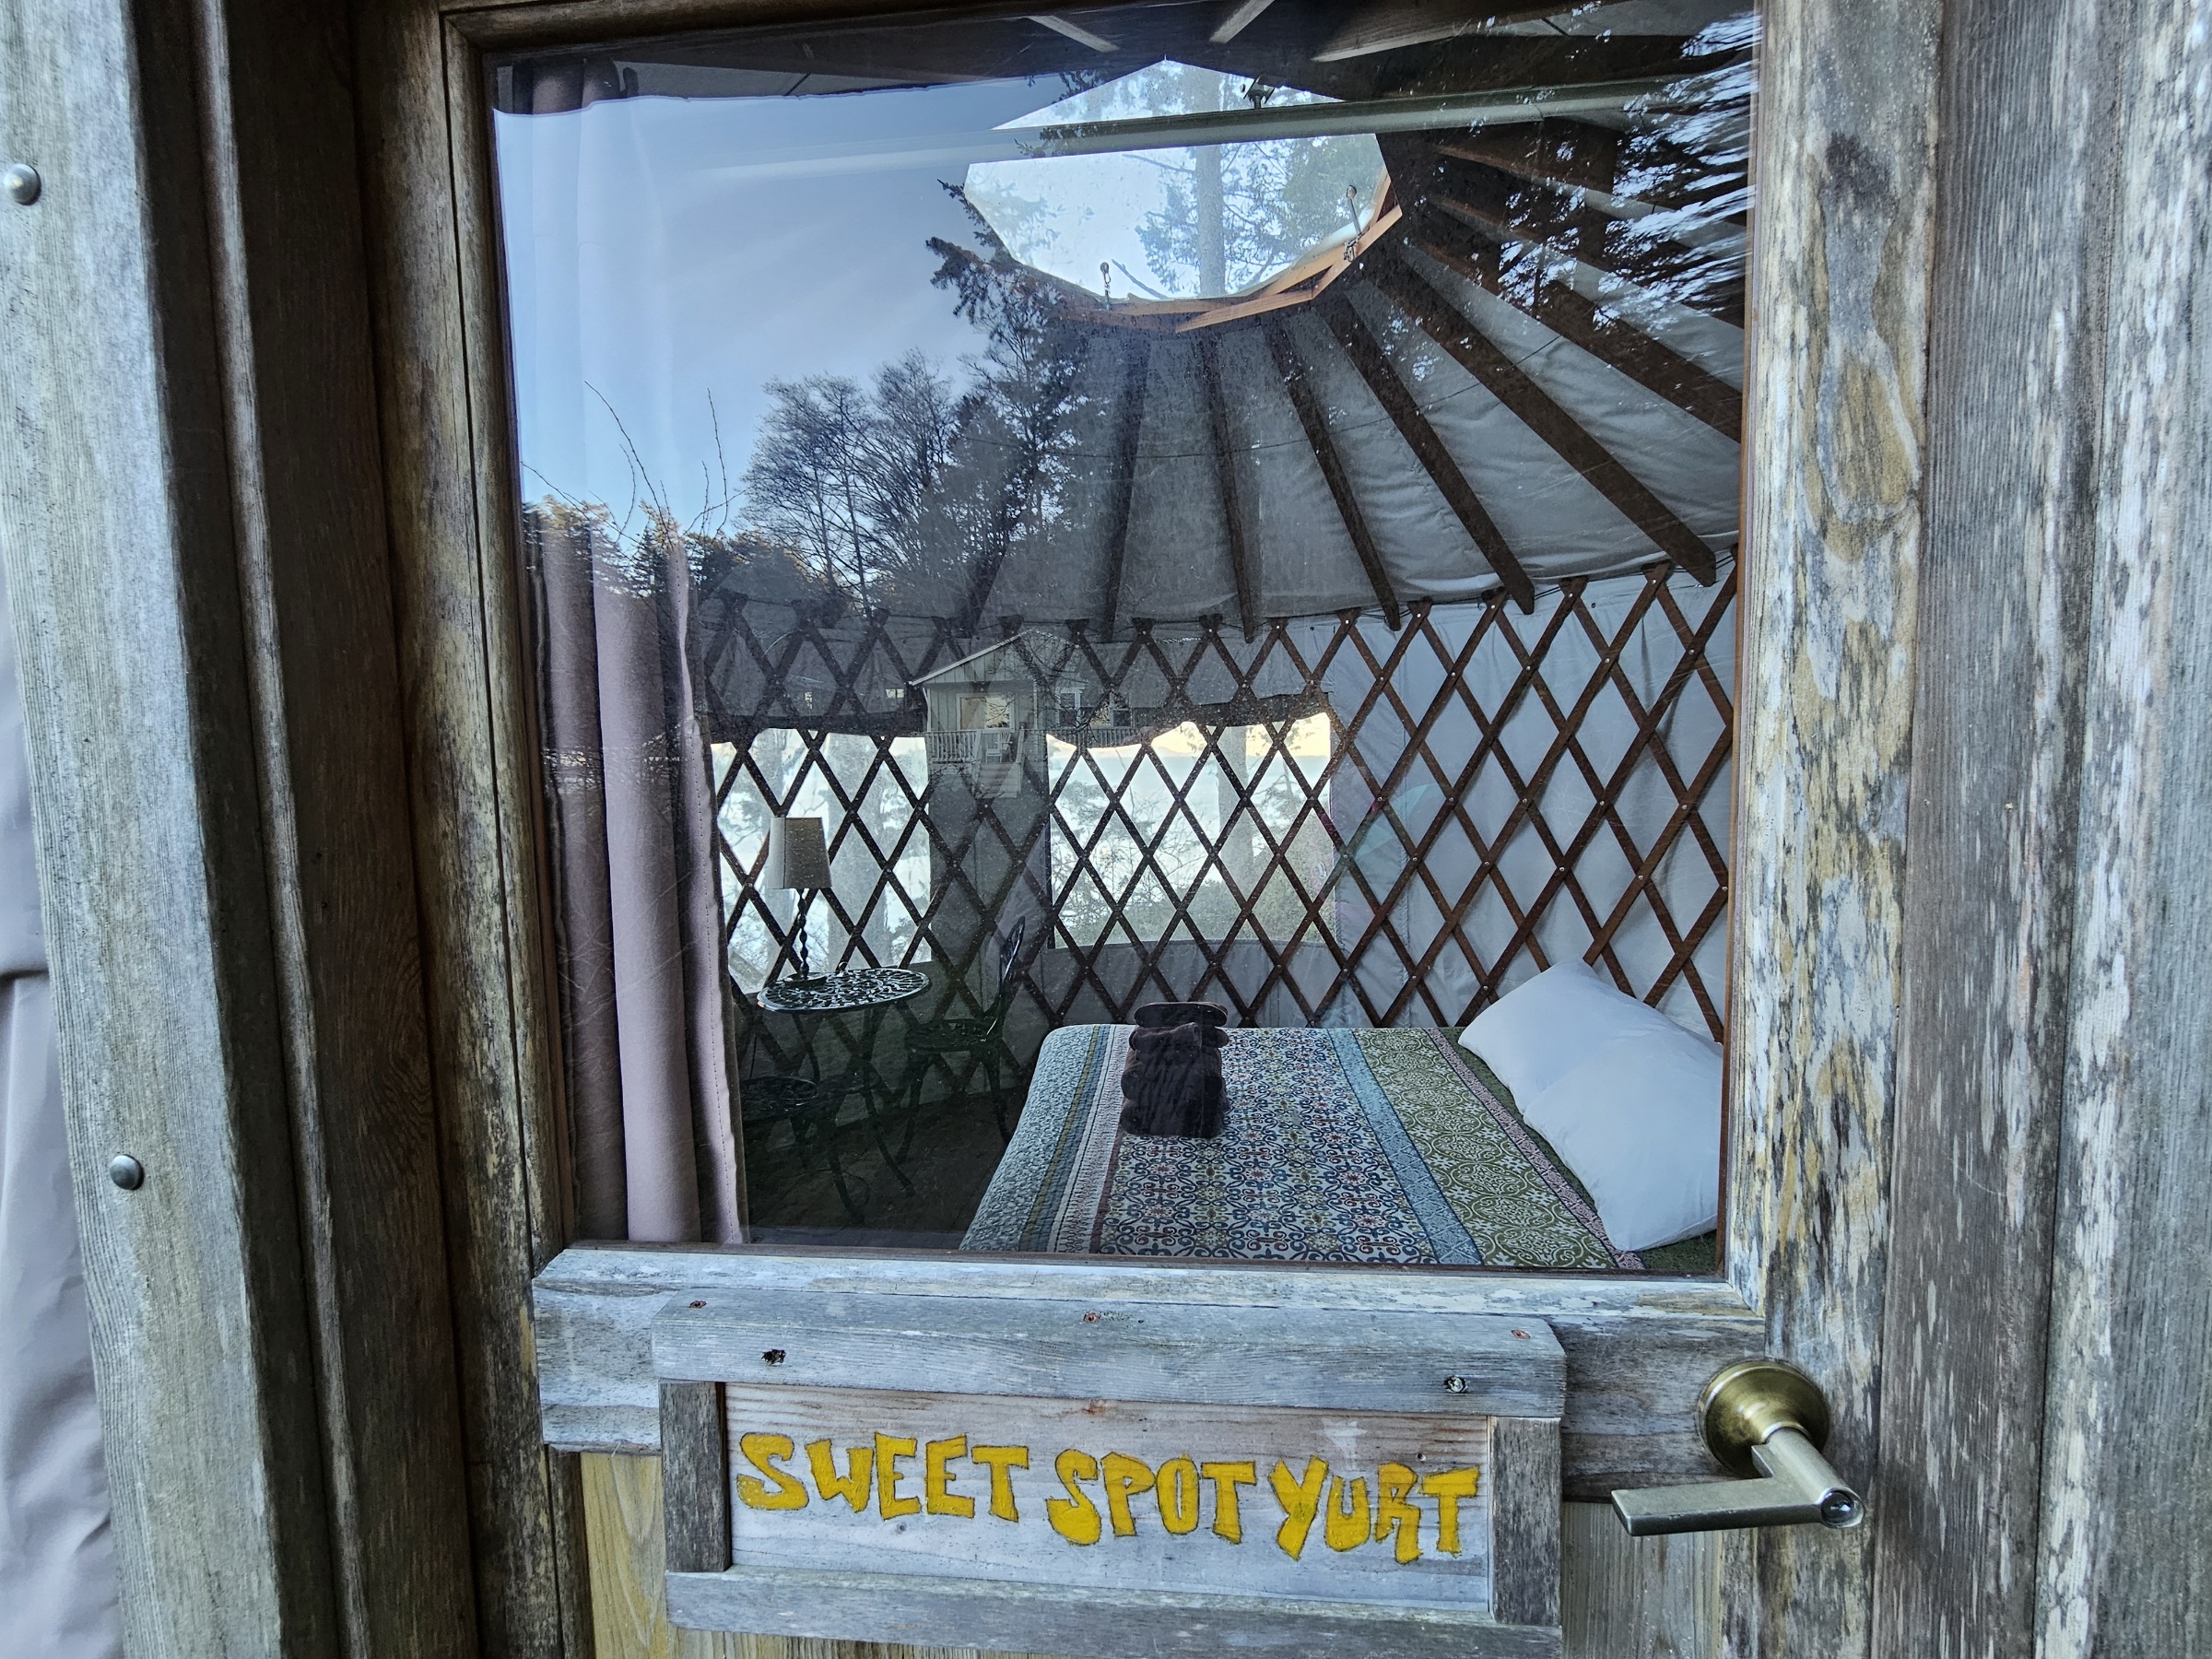 "sweet spot yurt"